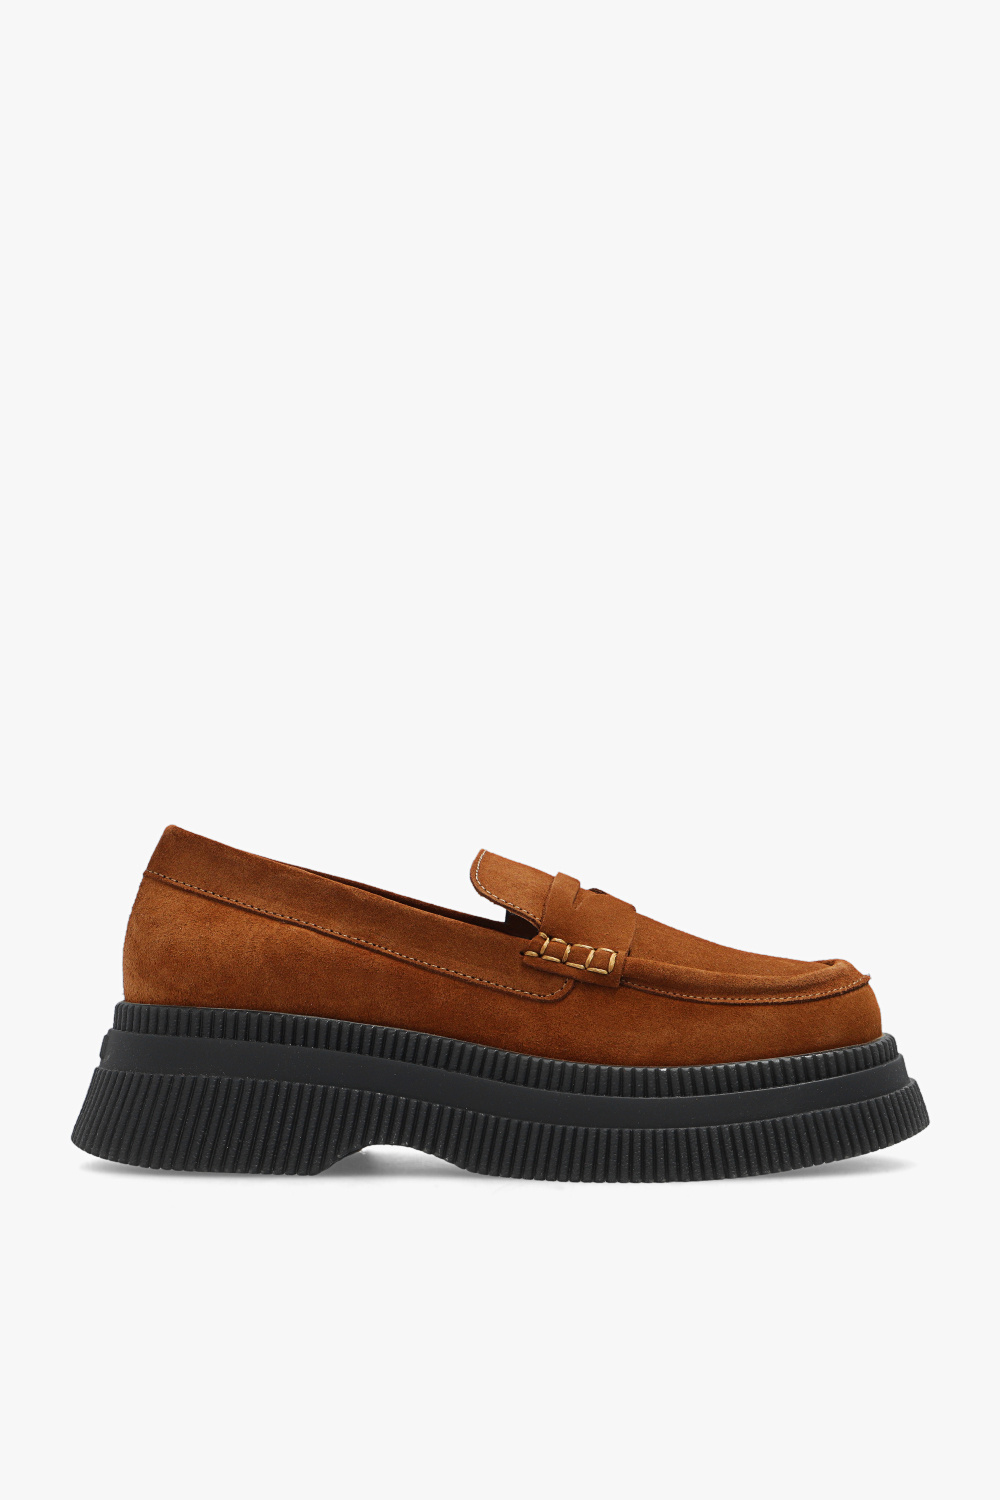 Ganni Detroit leather monk shoes